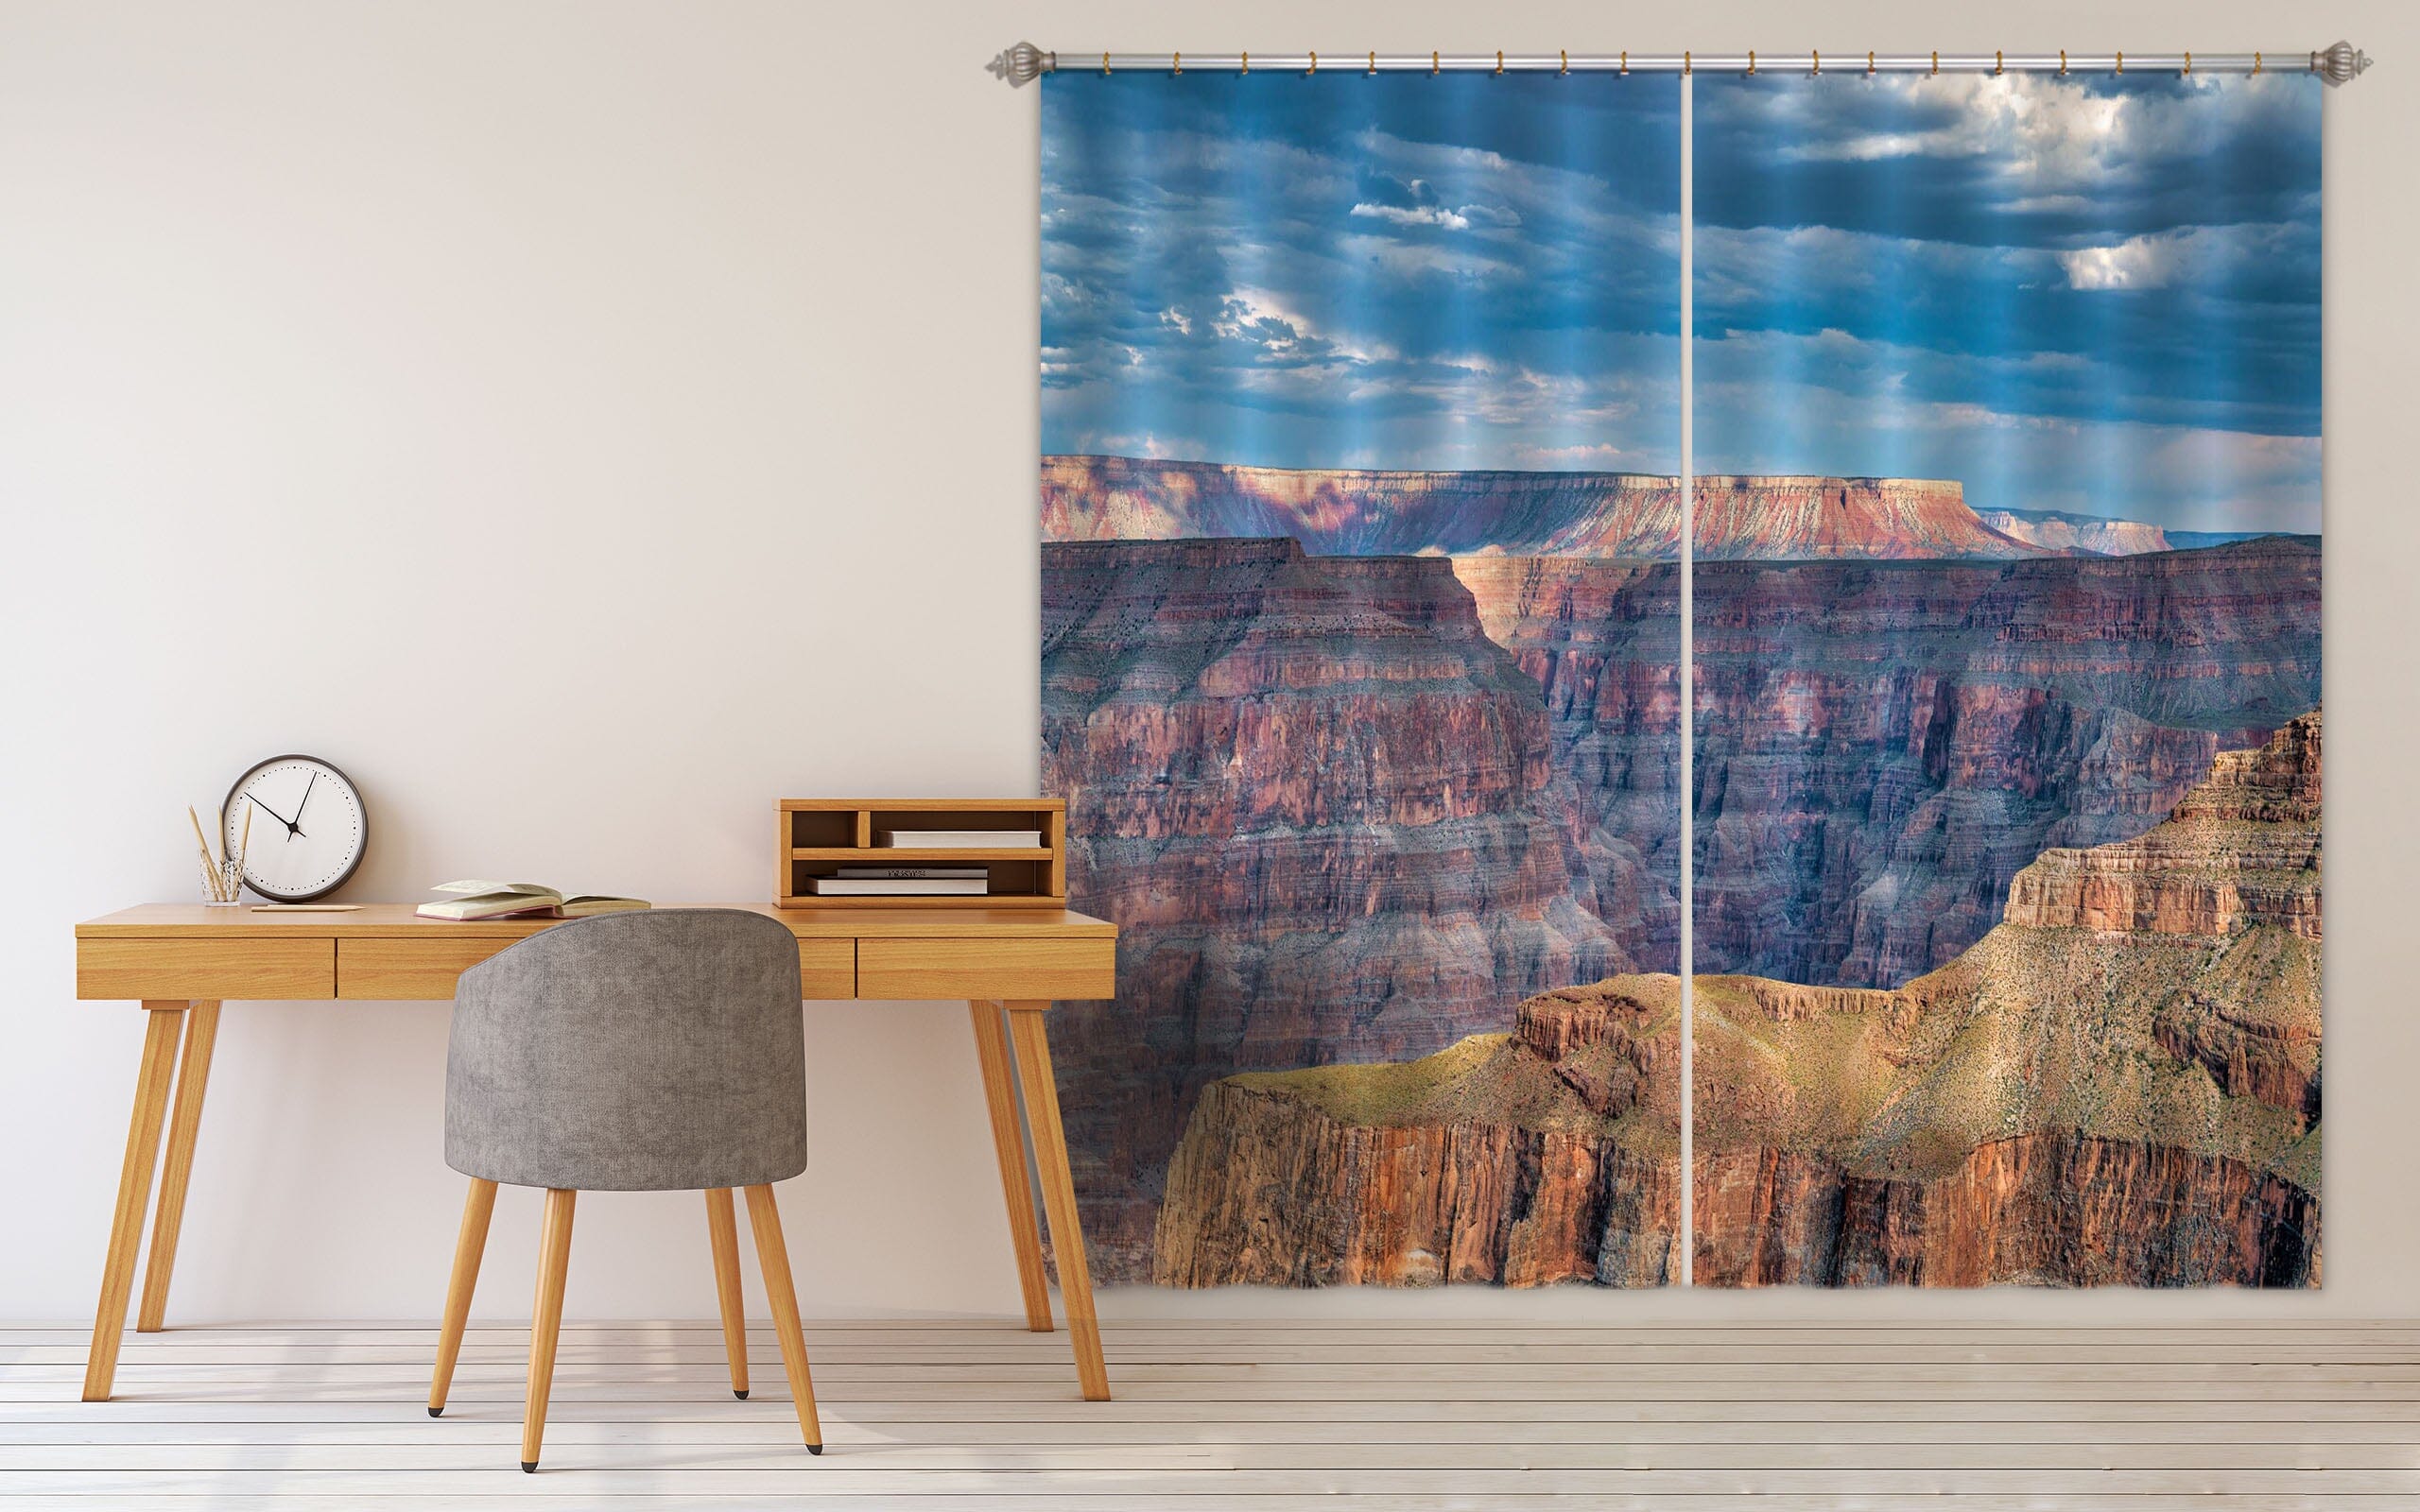 3D Big Mountain 186 Marco Carmassi Curtain Curtains Drapes Curtains AJ Creativity Home 